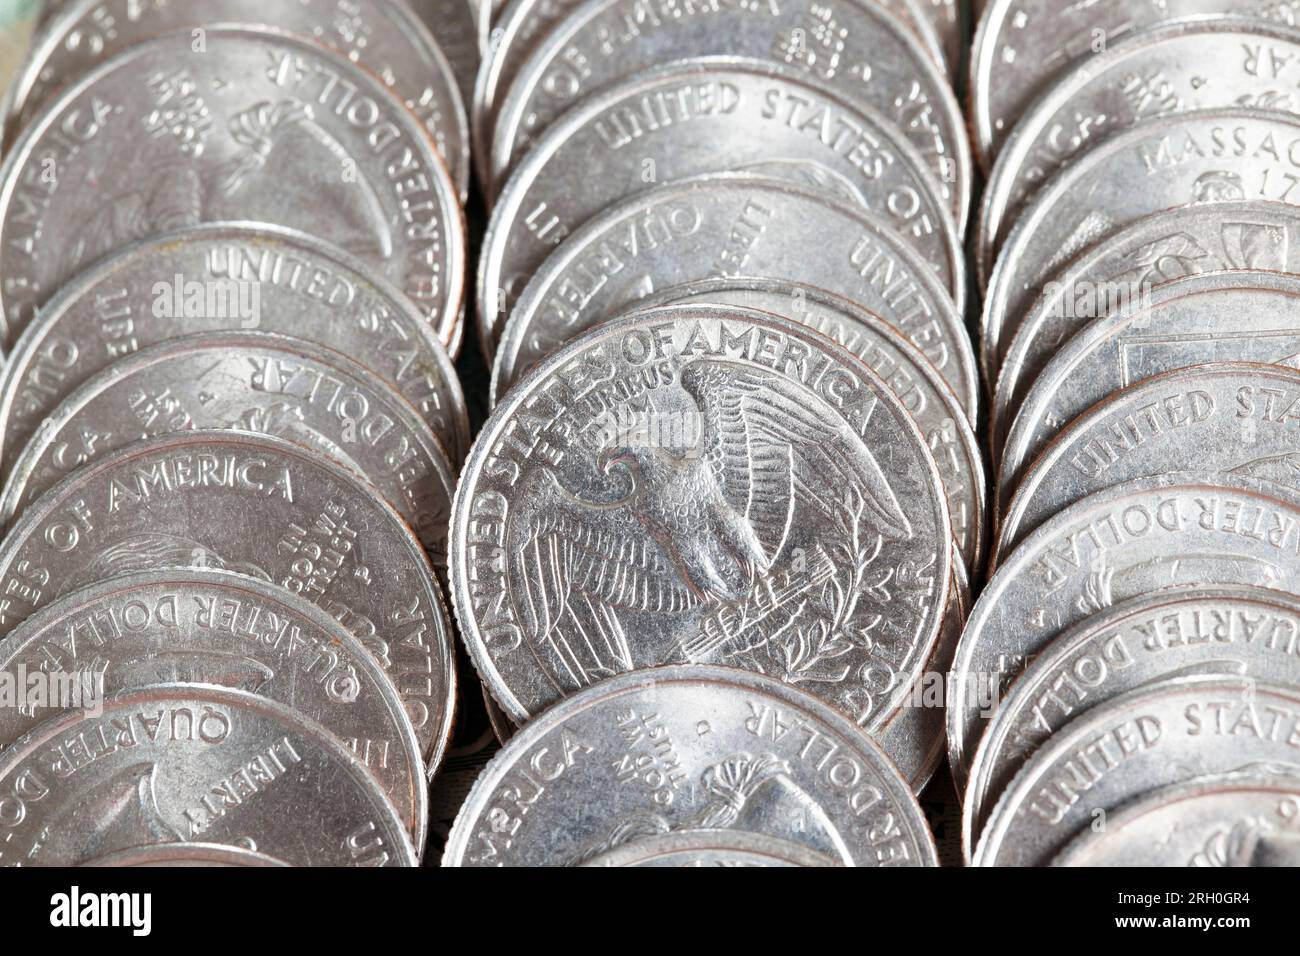 Monete americane un quarto di dollaro americano accatastato insieme, un mazzo di monete americane di 25 centesimi, vecchie monete sporche Foto Stock